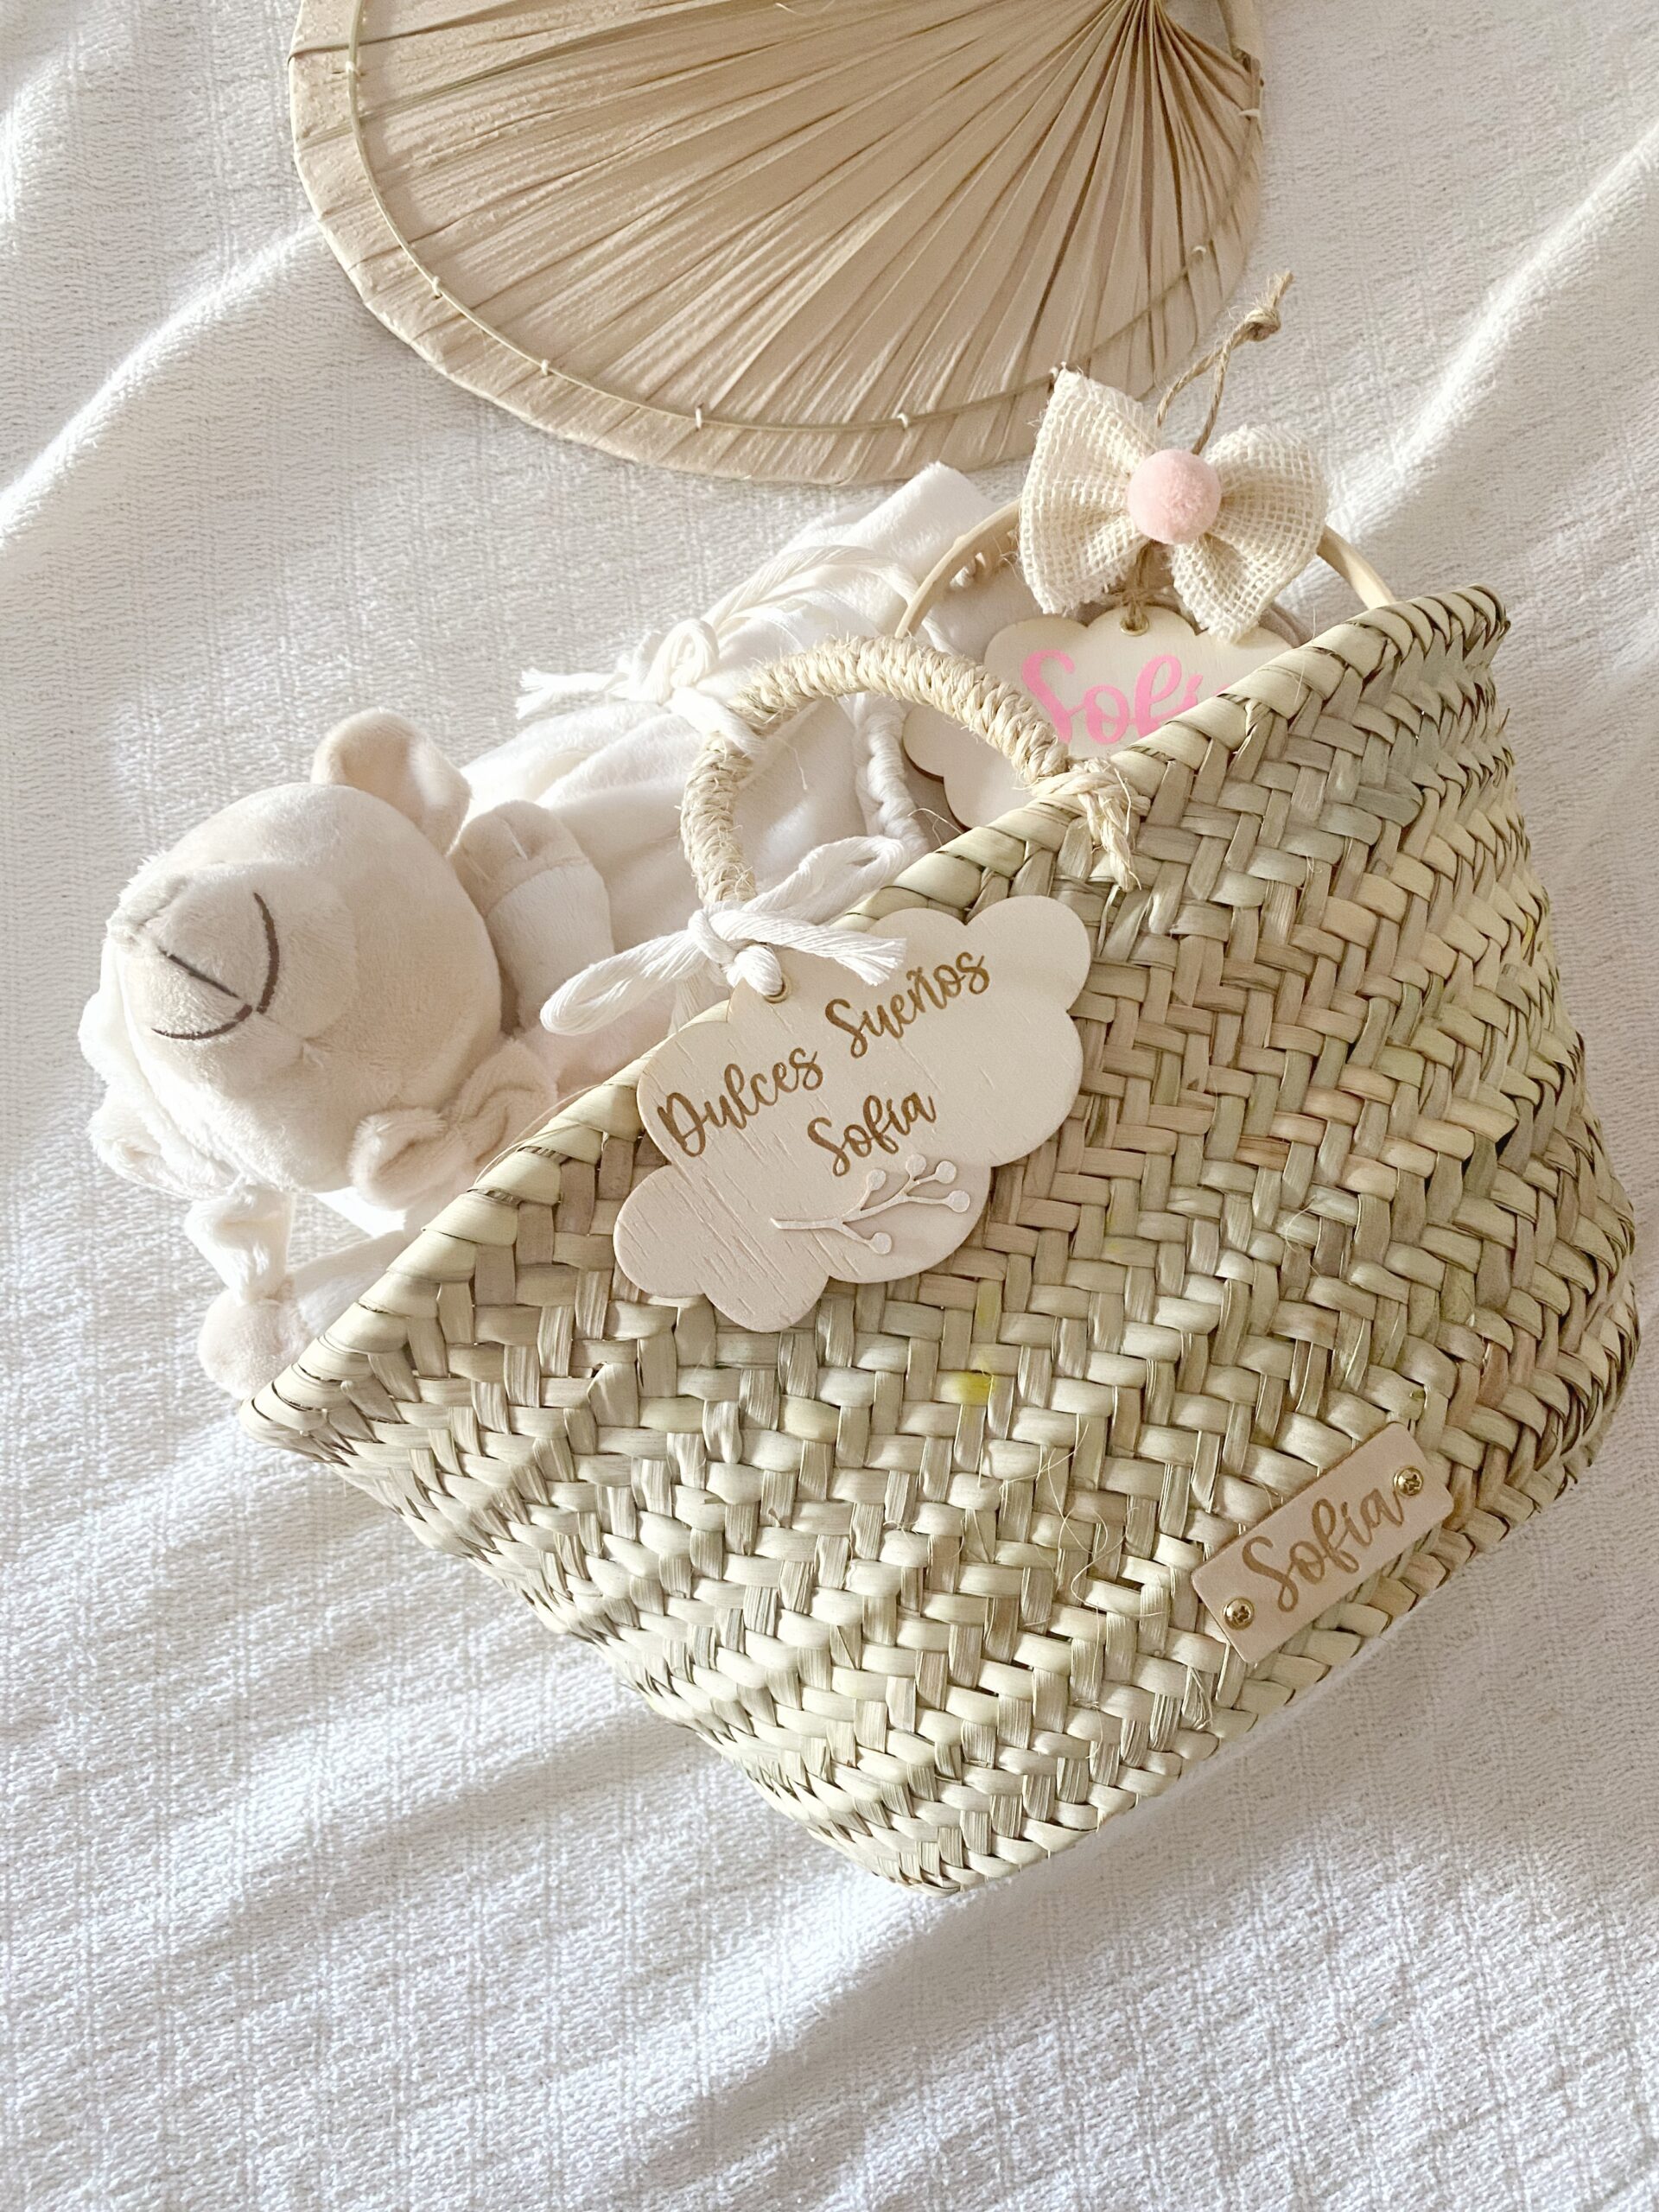 Canastillas para bebés y cestas hechas a mano